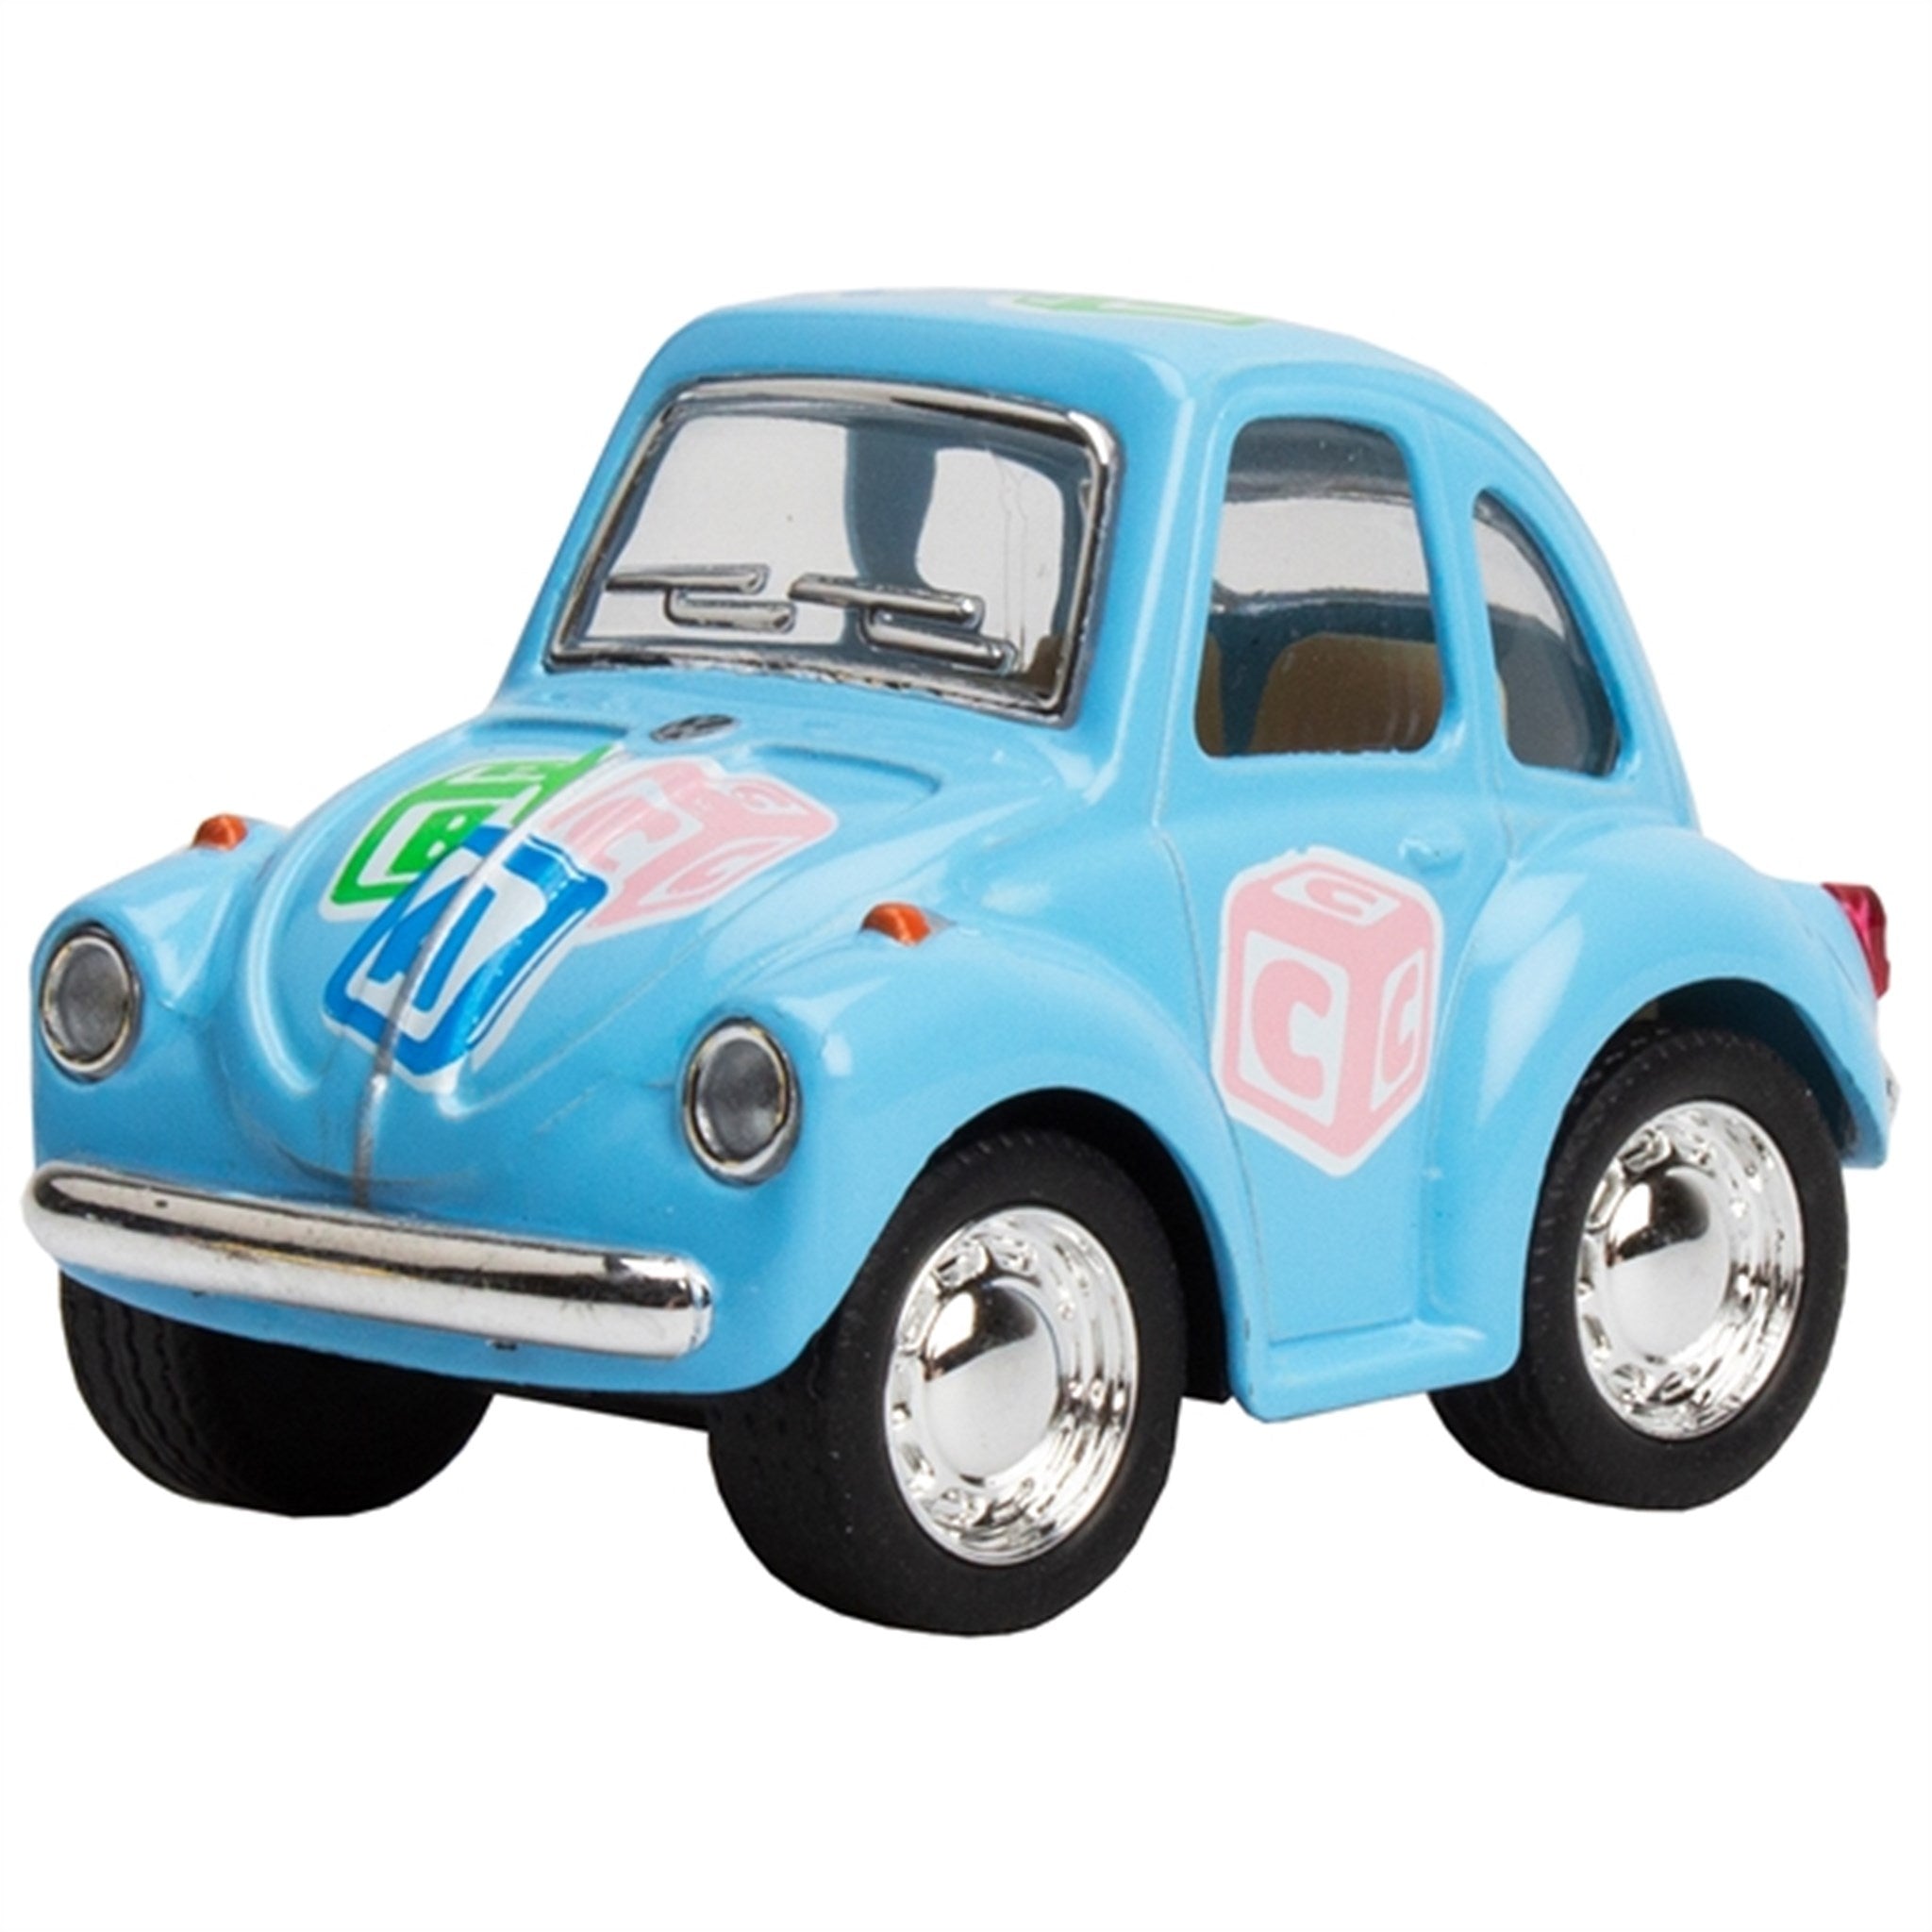 Magni VW Classic Beetle - Blue Pastel